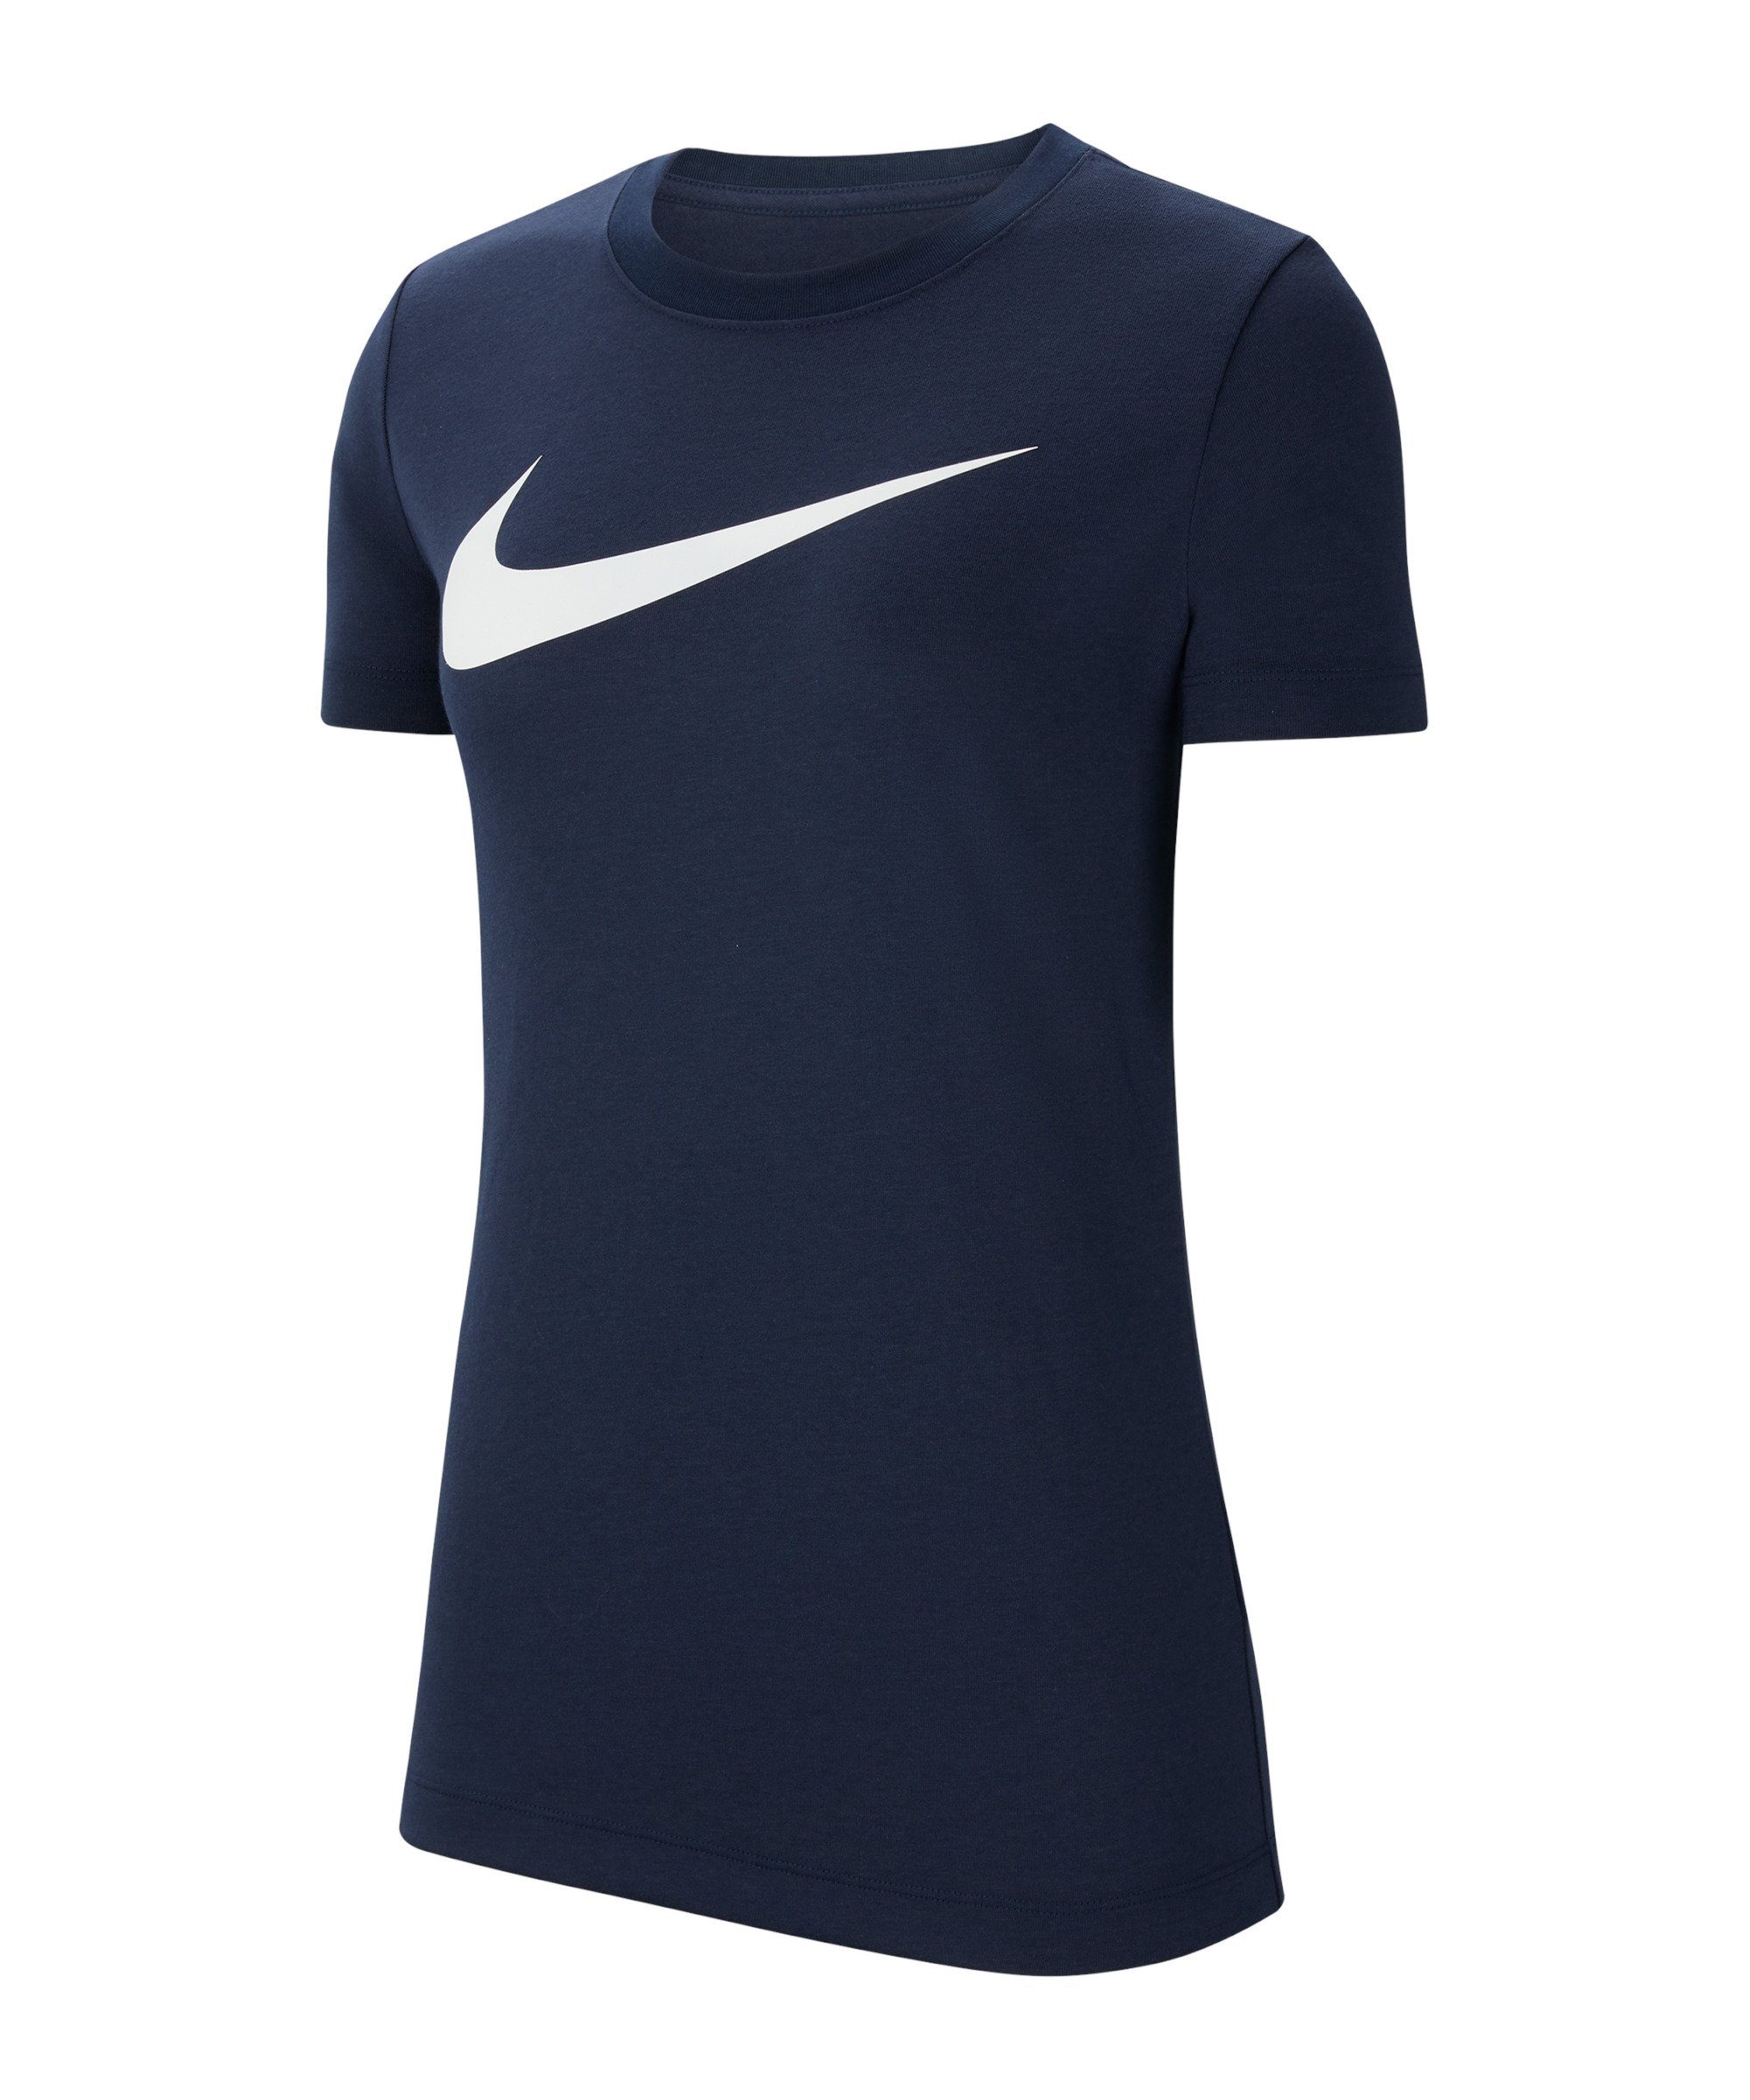 20 Swoosh blauweiss Damen Park T-Shirt default Nike T-Shirt